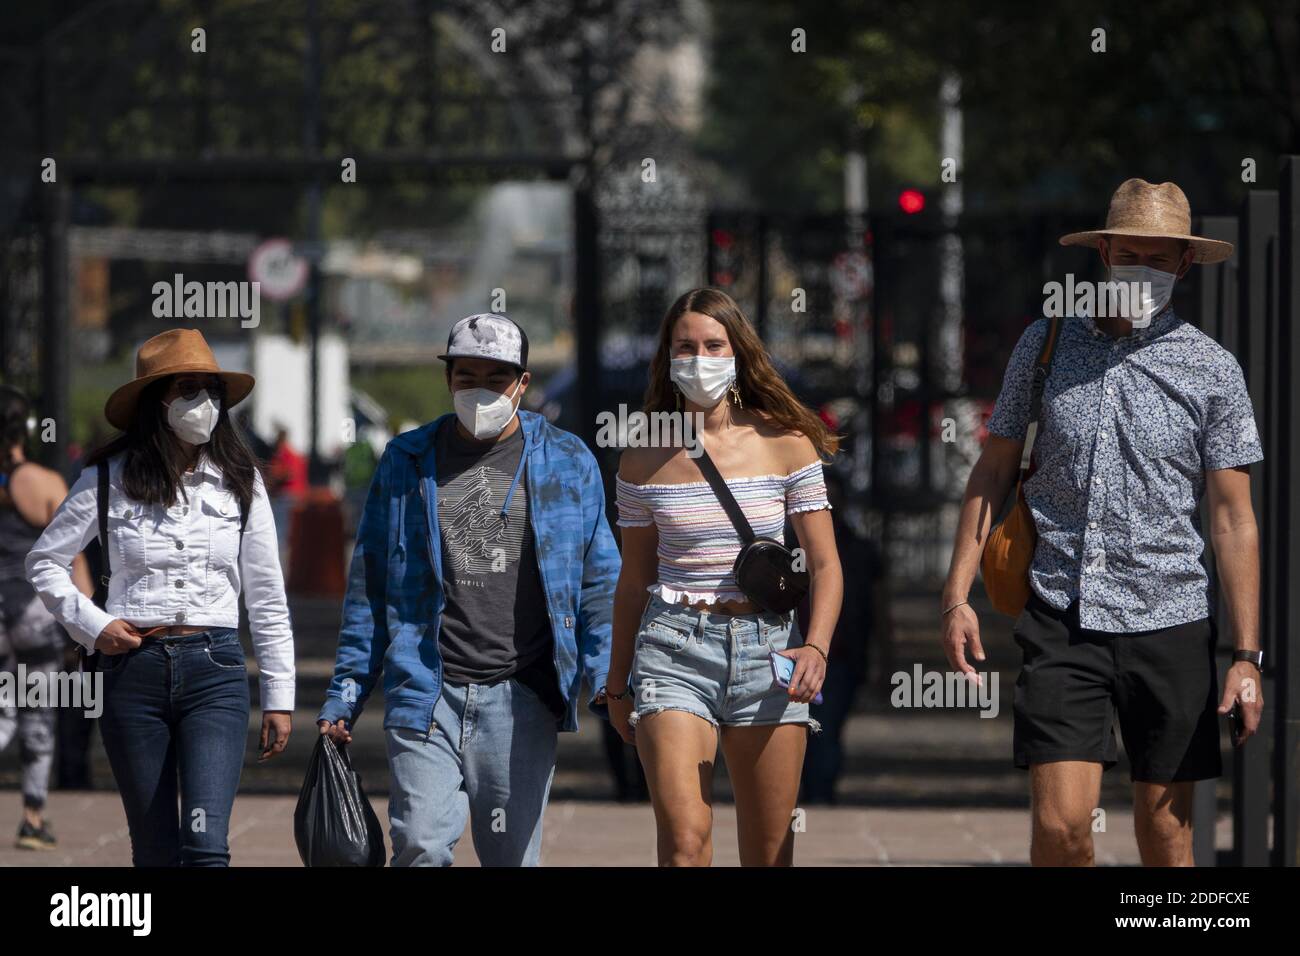 Ciudad de México, México. 24 de noviembre de 2020. Las personas que usan máscaras caminan en el Parque Chapultepec en la Ciudad de México, México, 24 de noviembre de 2020. El Ministerio de Salud de México informó el martes de 10,794 nuevos casos de coronavirus, con lo que el número oficial de casos llegó a 1,060,152. Crédito: Luis Licona/Xinhua/Alamy Live News Foto de stock